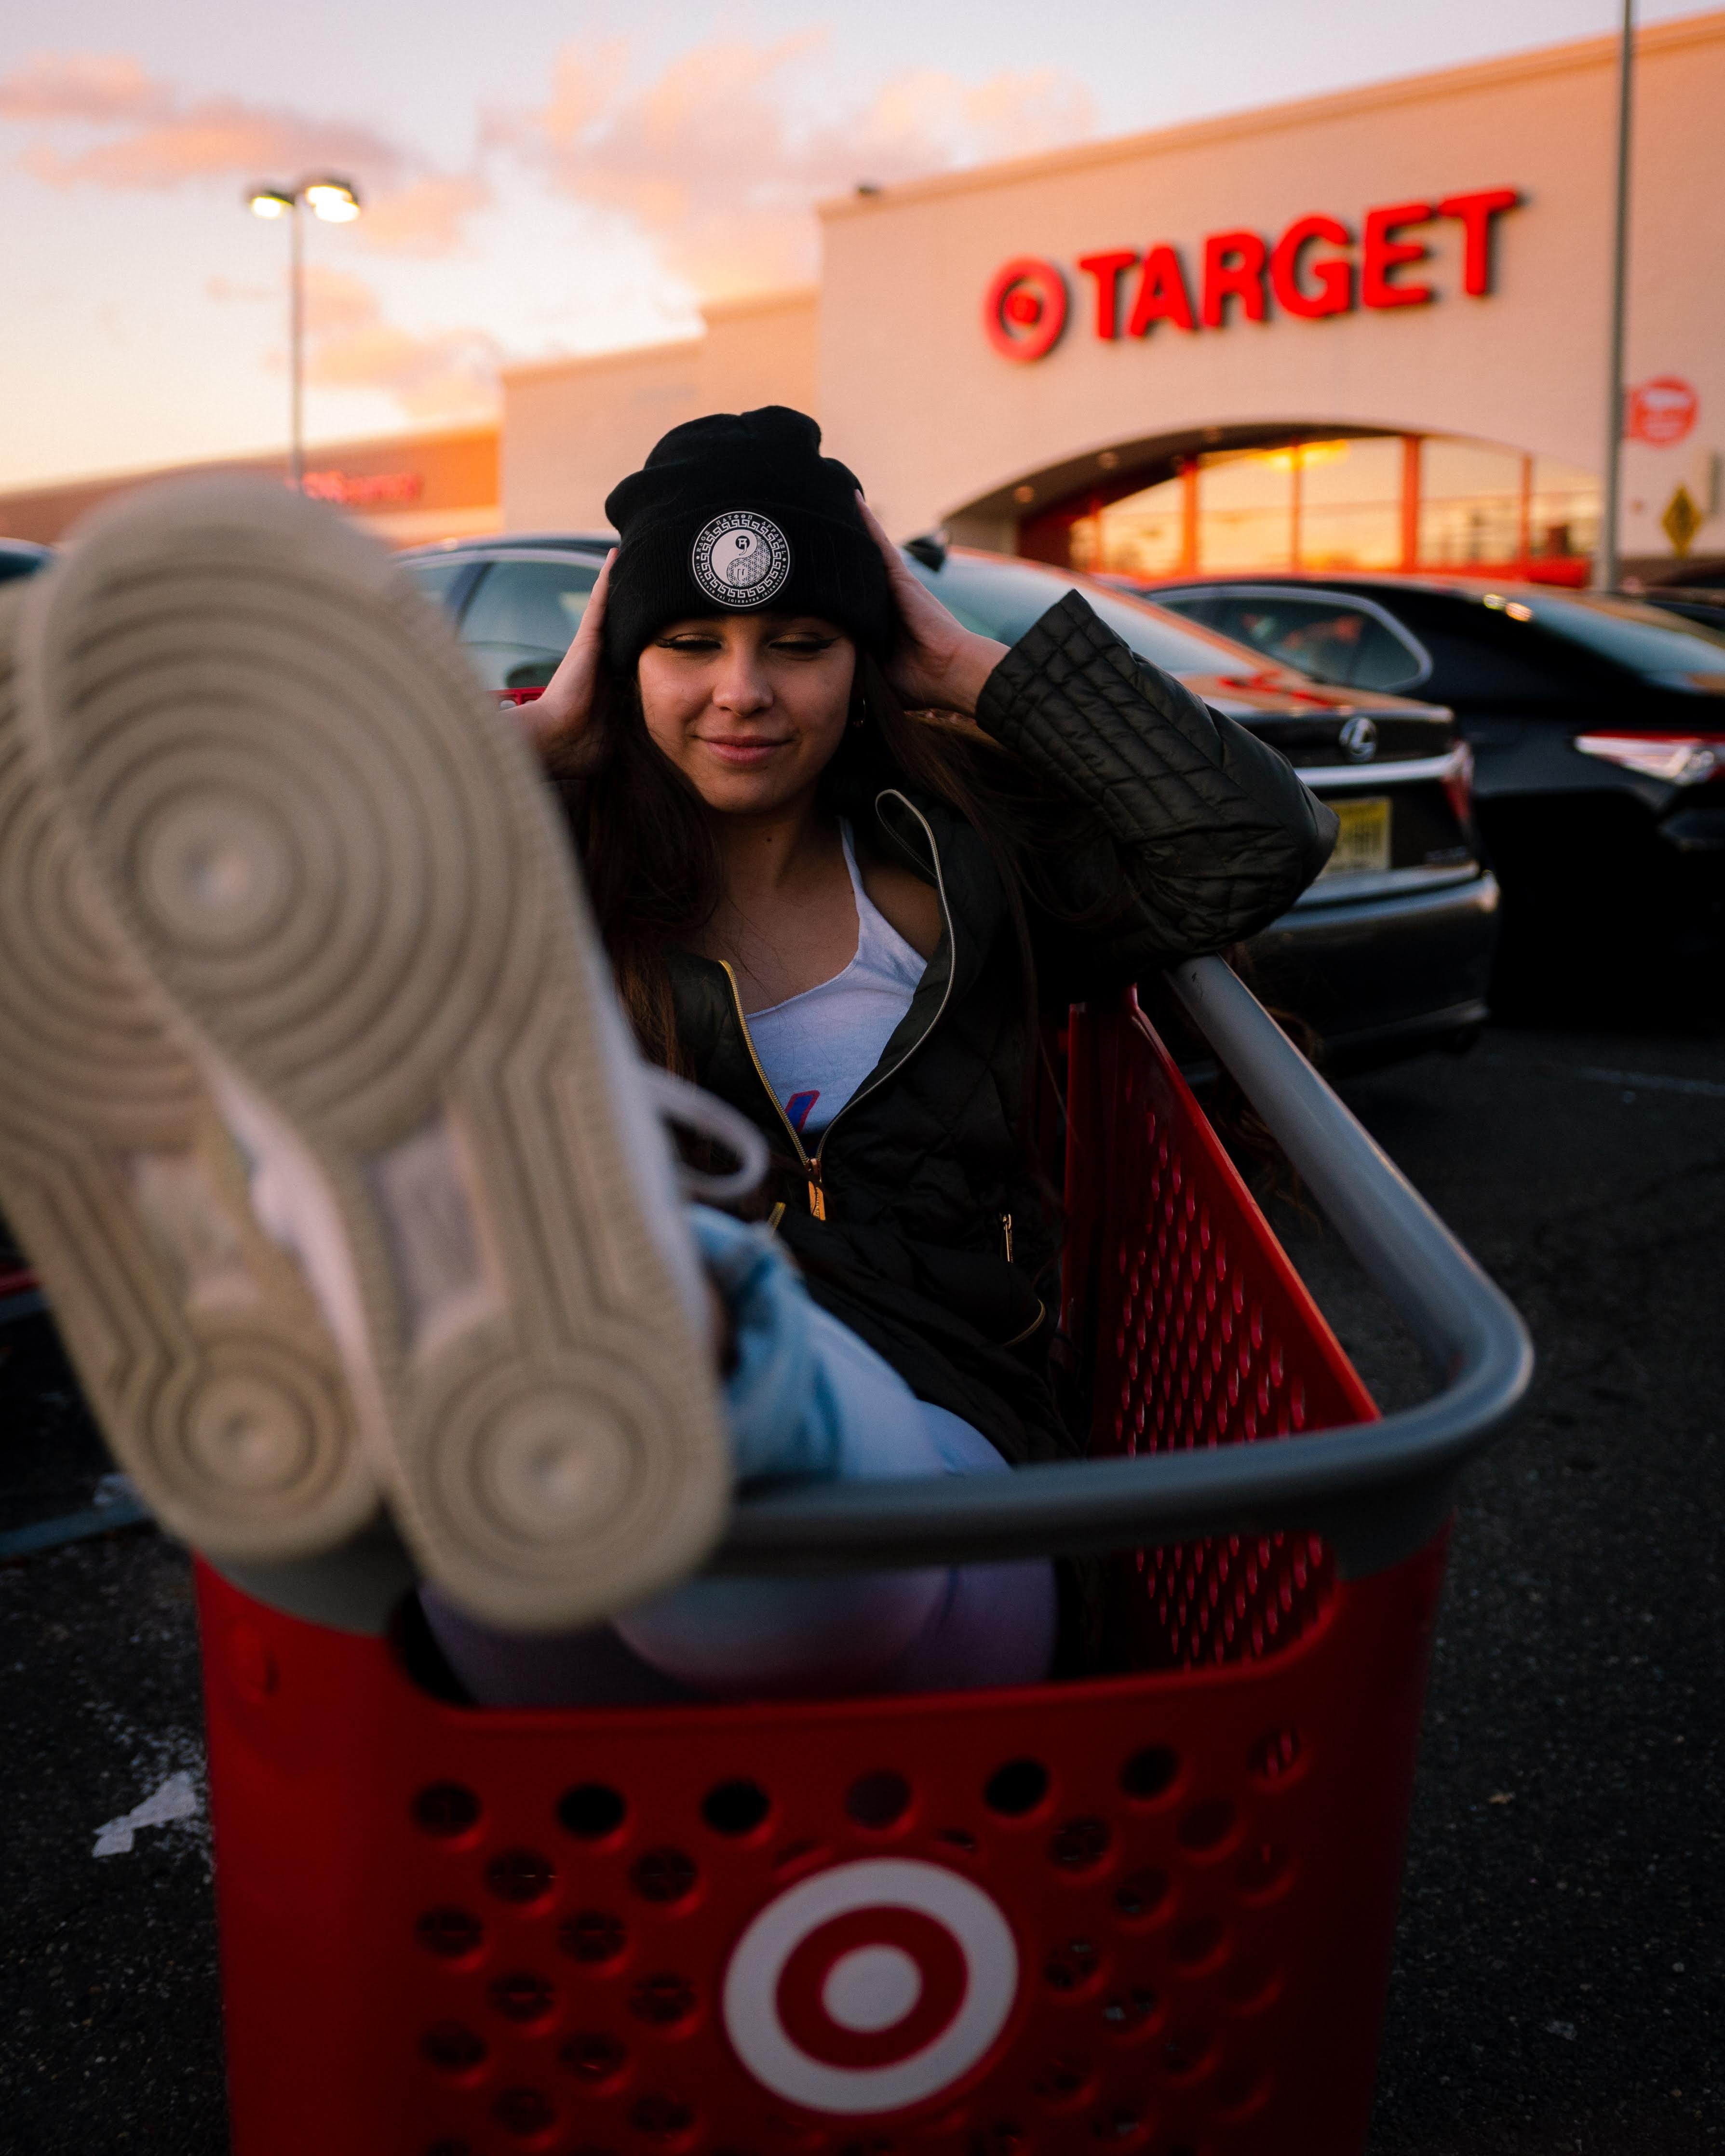 Eine Frau sitzt in einem Target Einkaufswagen und im Hintergrund befindet sich ein Target Einkaufscenter